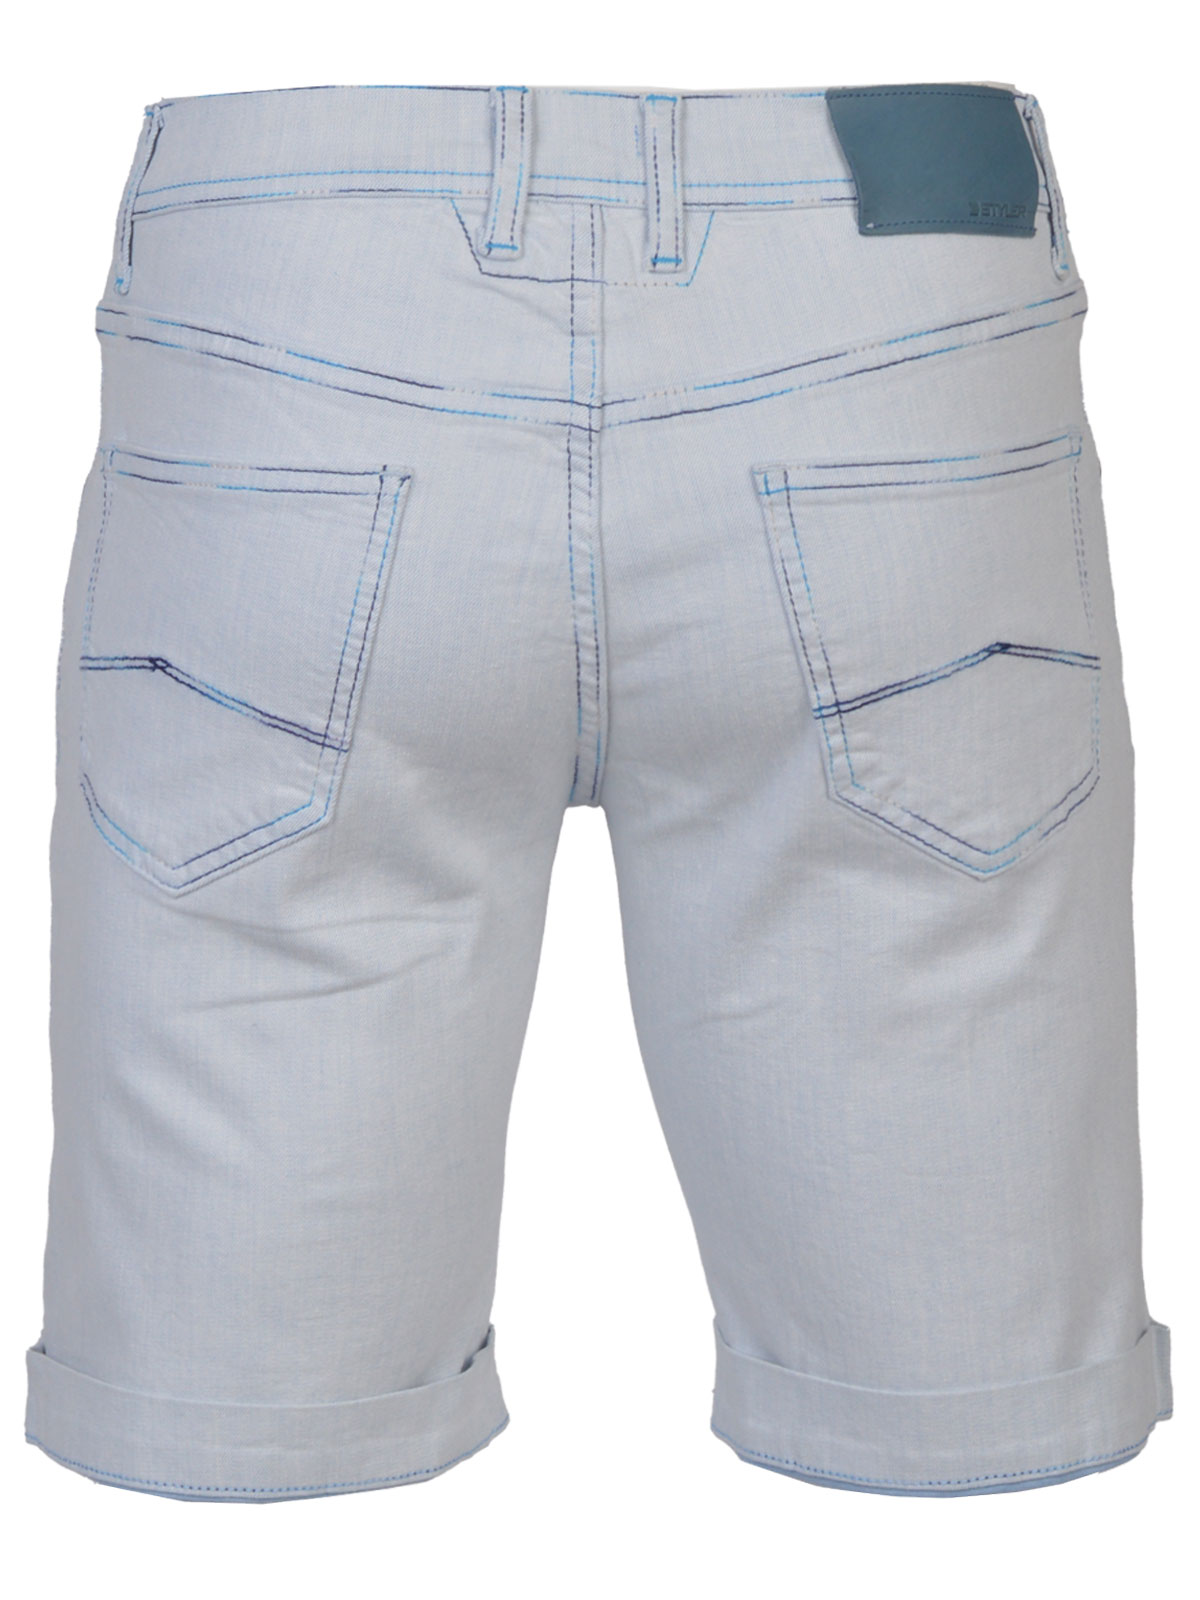 Jeans shorts in light blue denim - 67067 € 52.87 img2